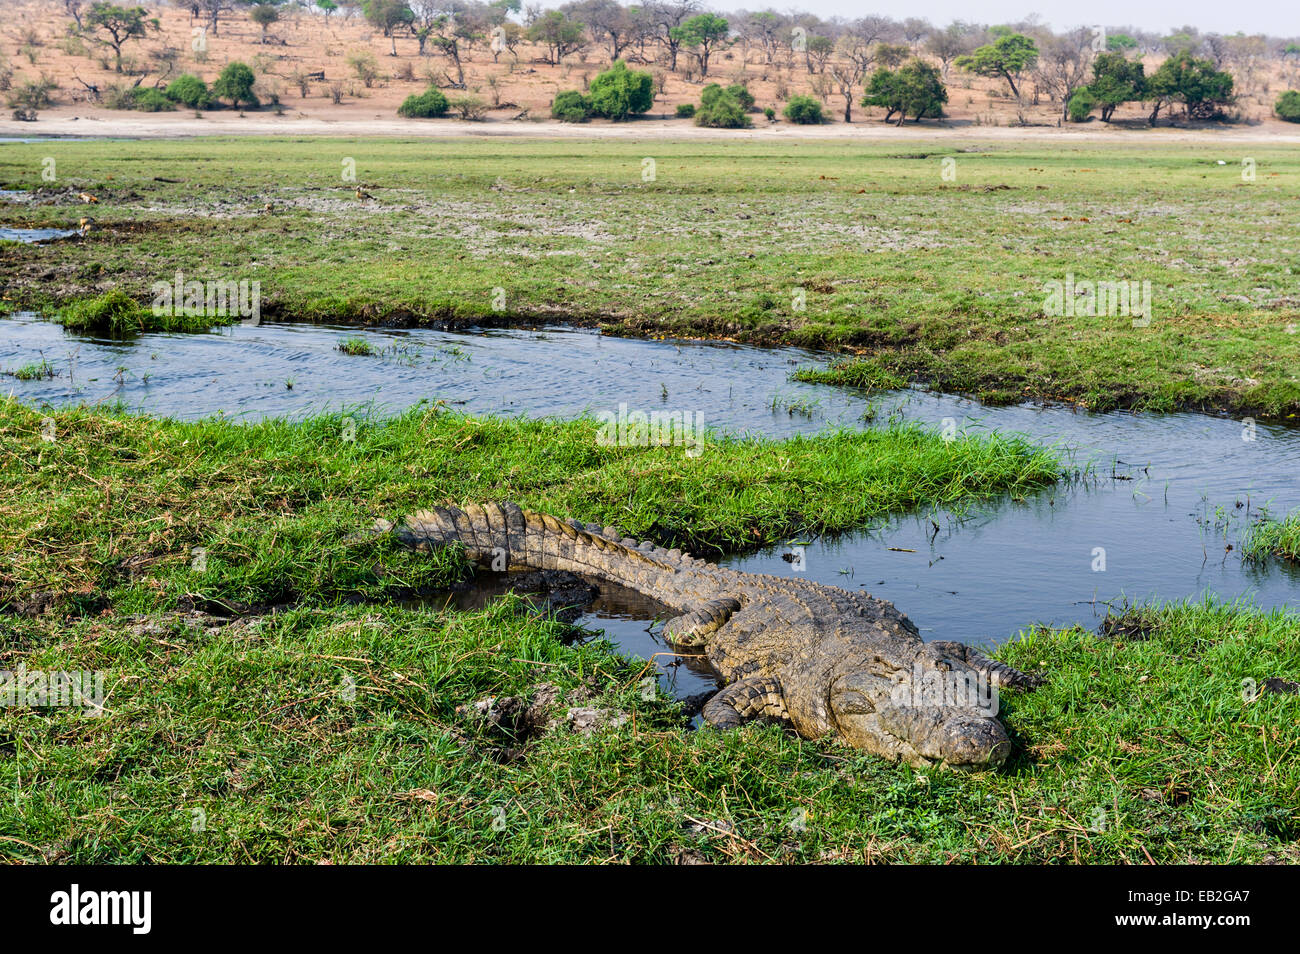 Eine enorme Nil-Krokodil-Sonne, sonnen sich auf einer Insel in einem Feuchtgebiet. Stockfoto